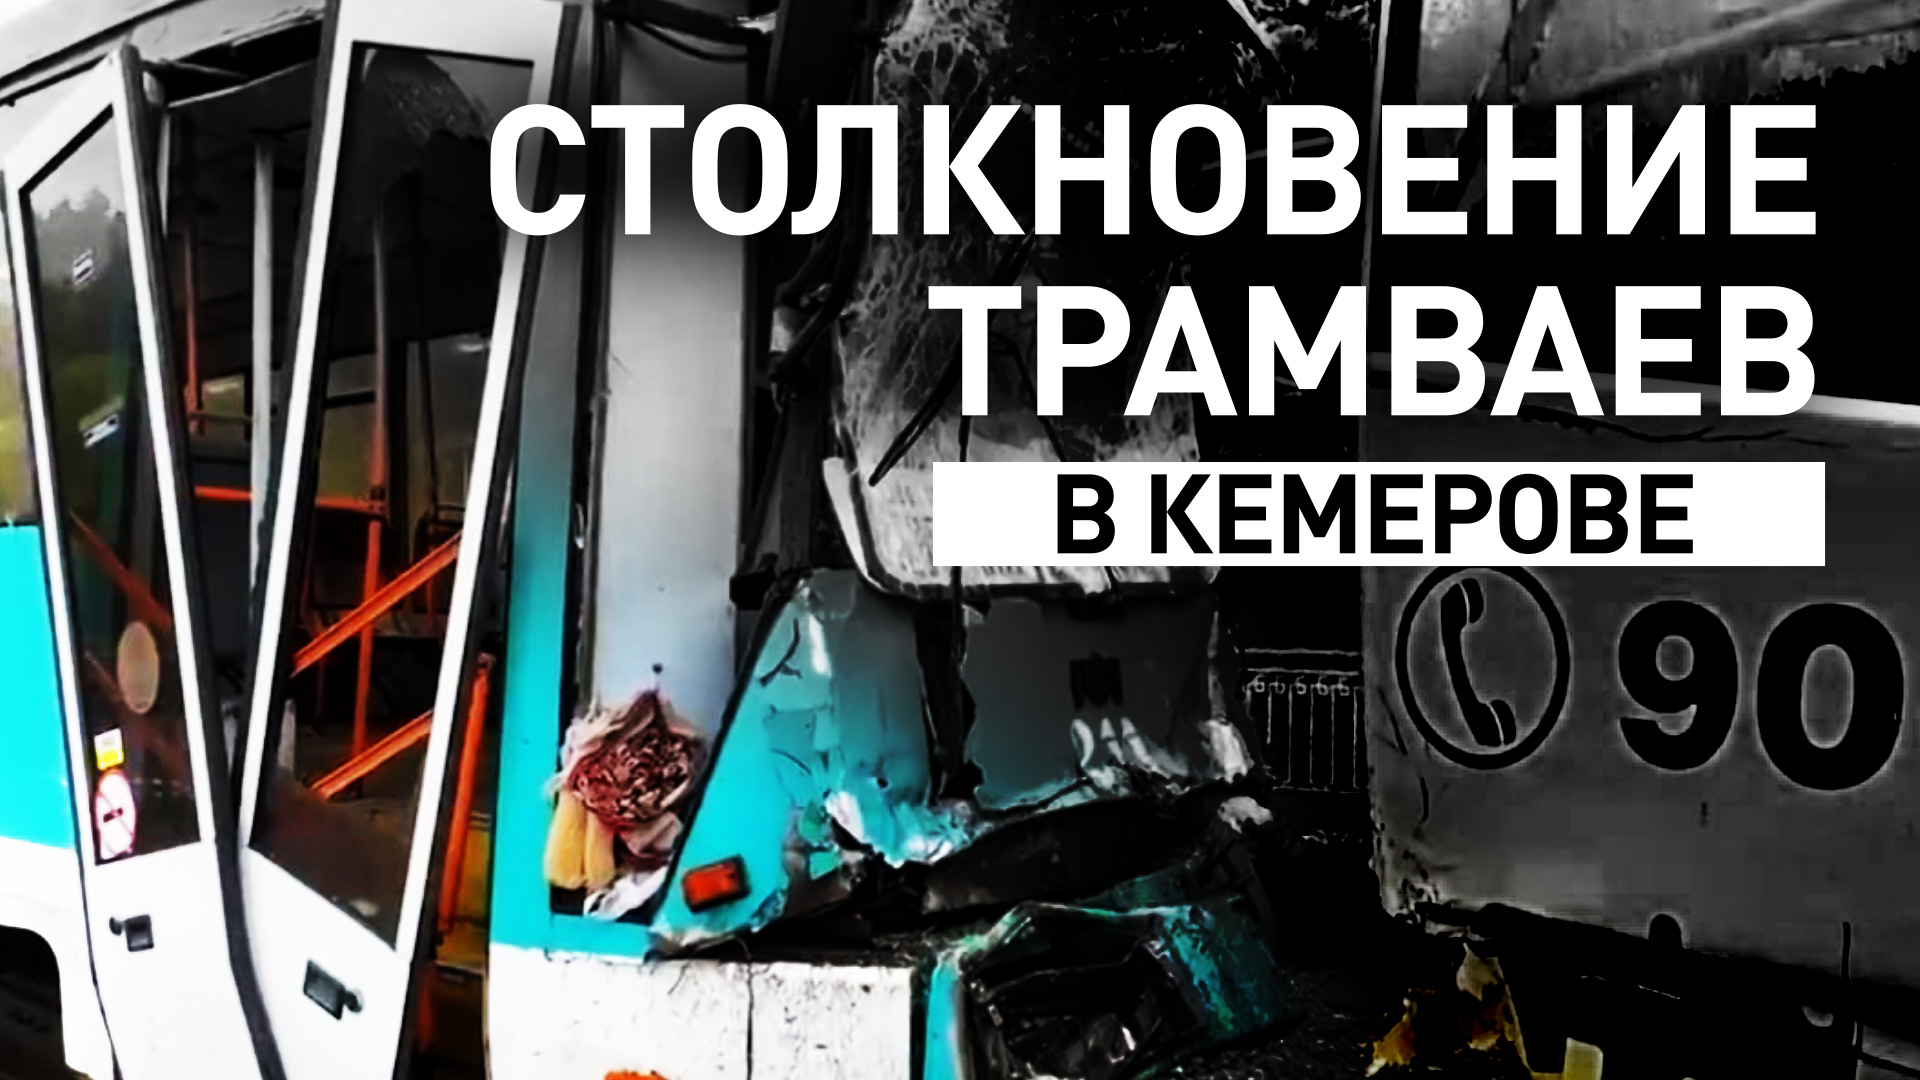 Более 100 человек пострадали в Кемерове из-за столкновения трамваев